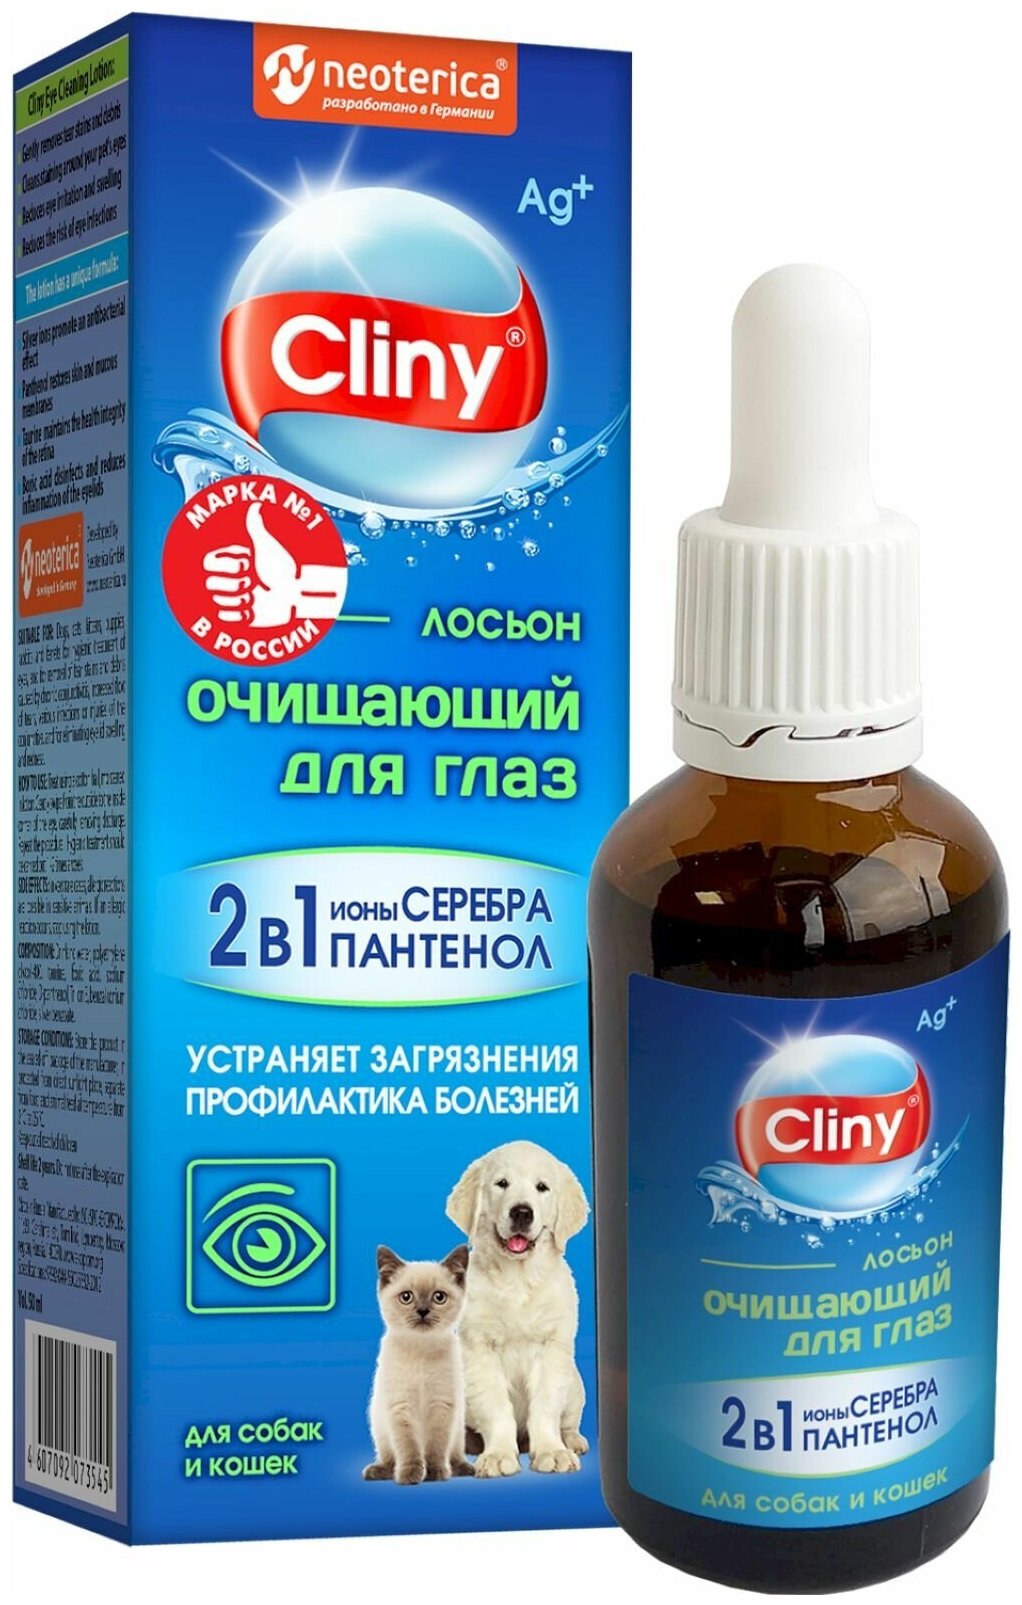 Лосьон для глаз Cliny, для кошек и собак, очищающий, 50 мл